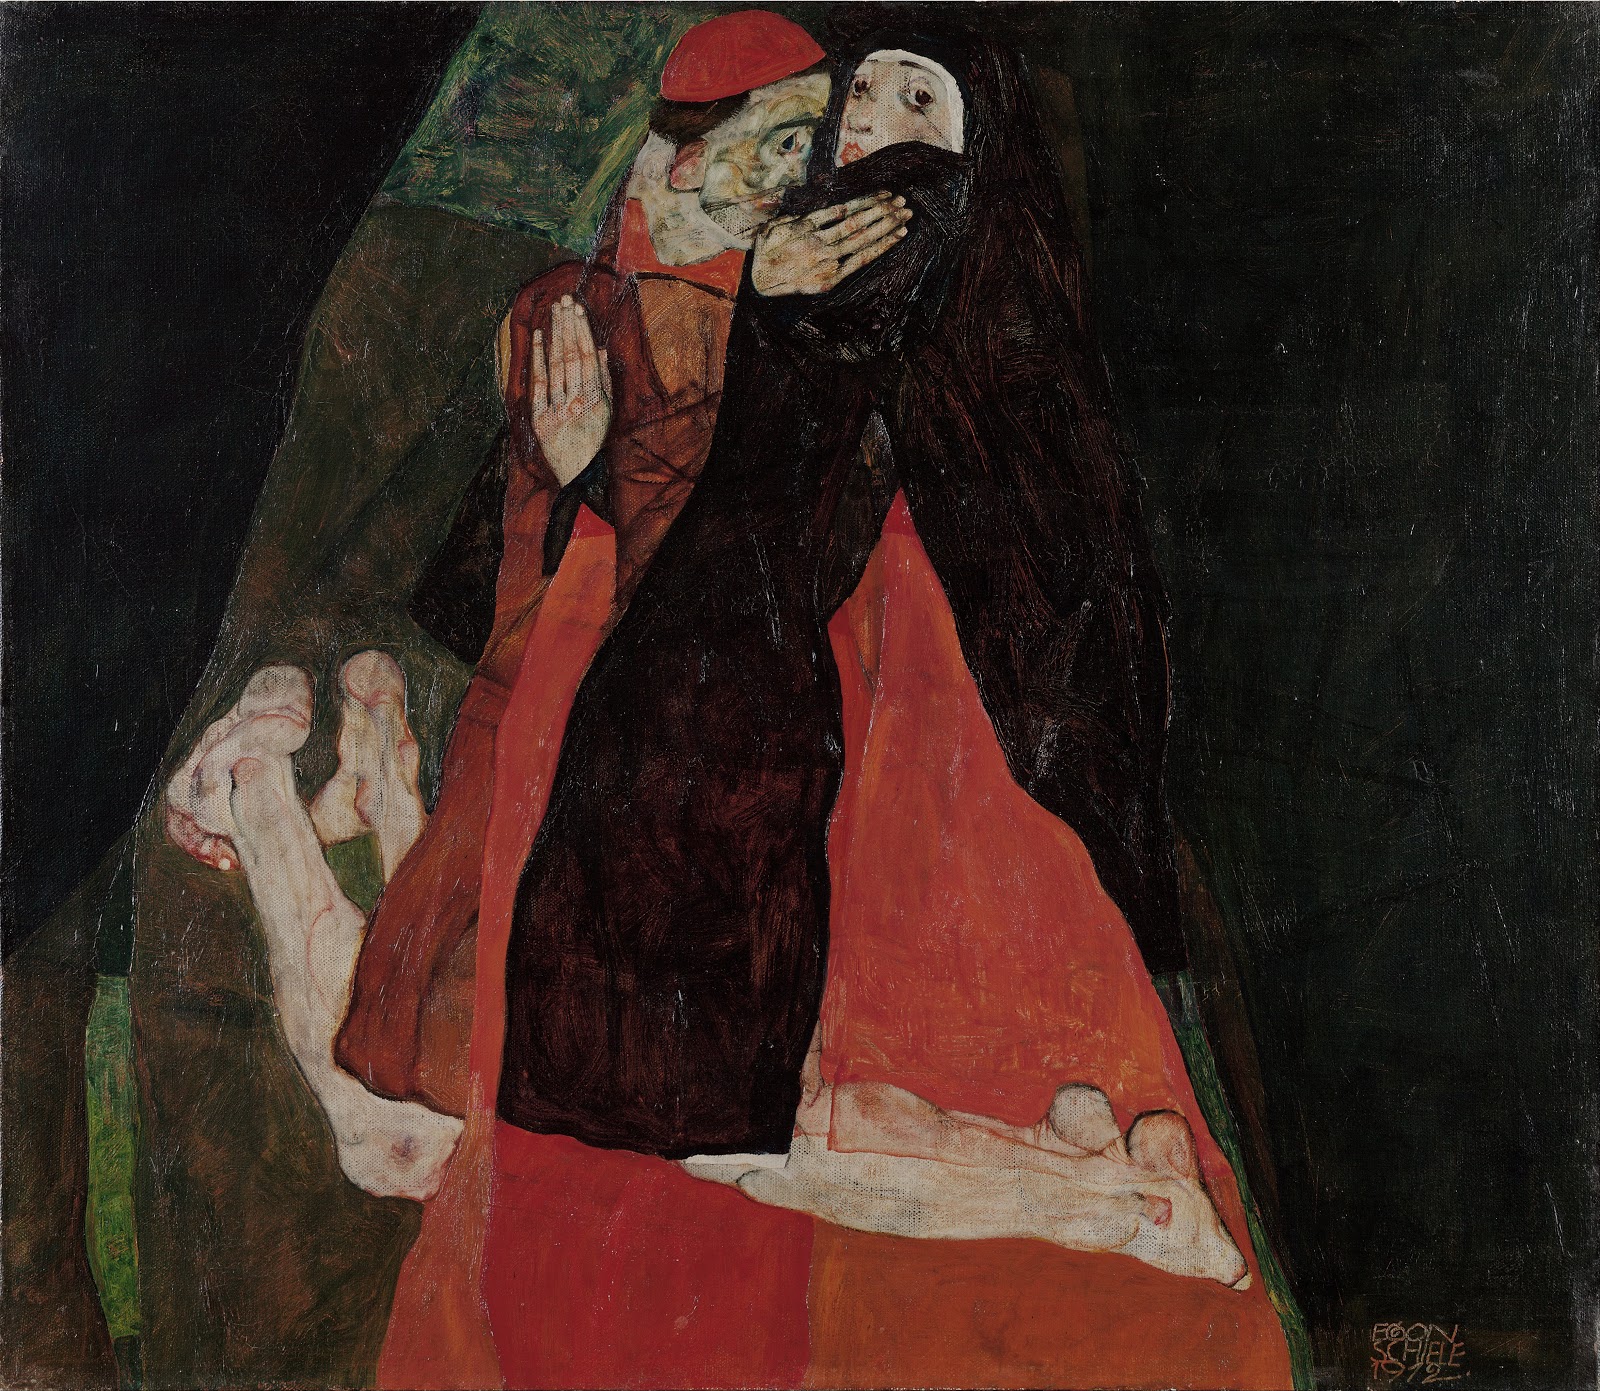 Egon+Schiele-1890-1918 (46).jpg